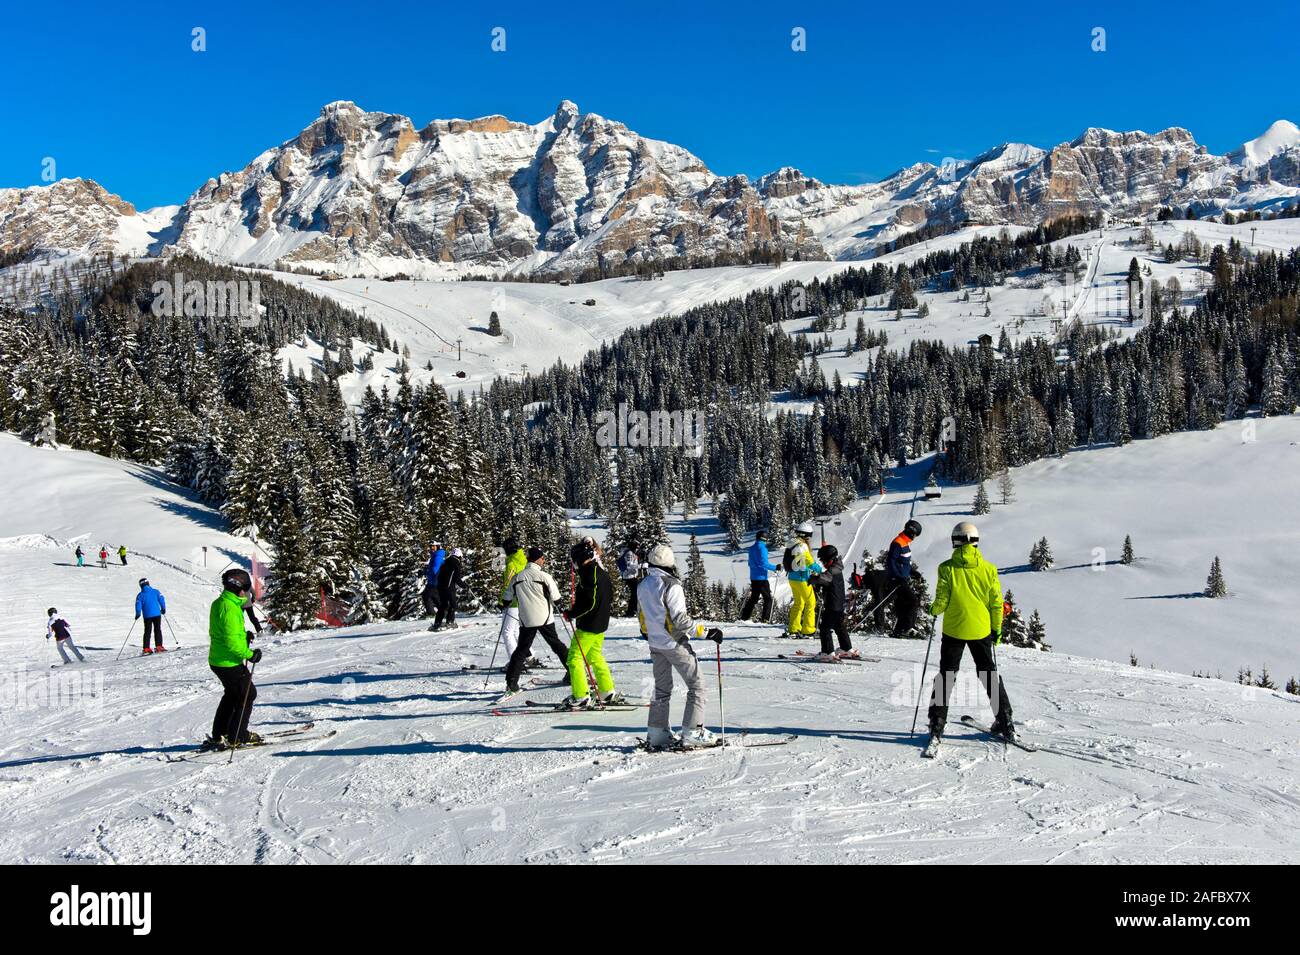 Gli sciatori su una pista da sci nel comprensorio sciistico Alta Badia, Dolomiti, Alto Adige, Italia Foto Stock